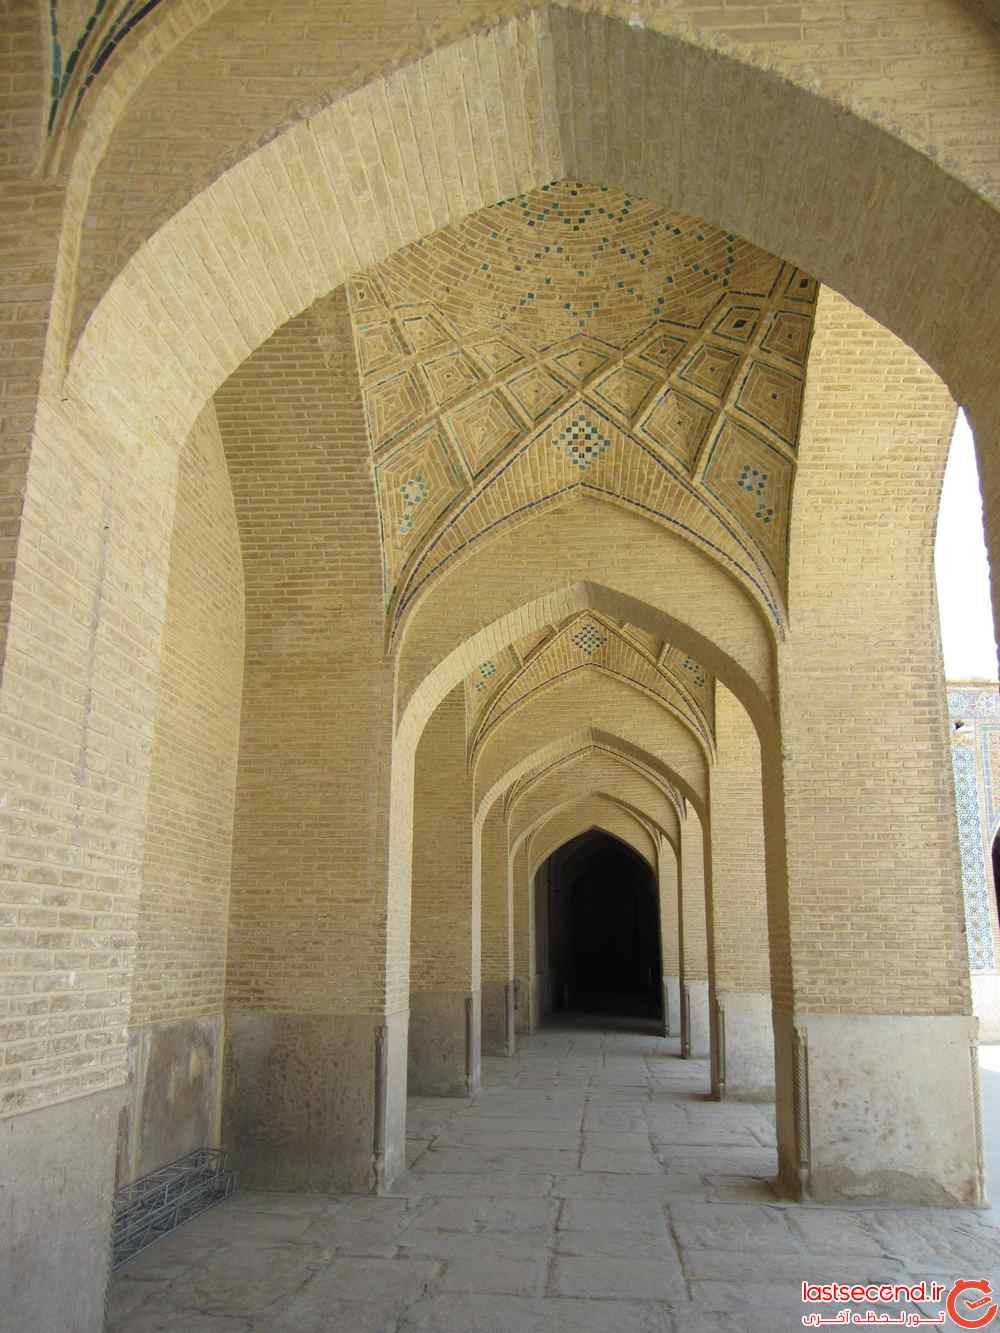  سفرنامه شیراز (نگین شهرهای توریستی ایران)   